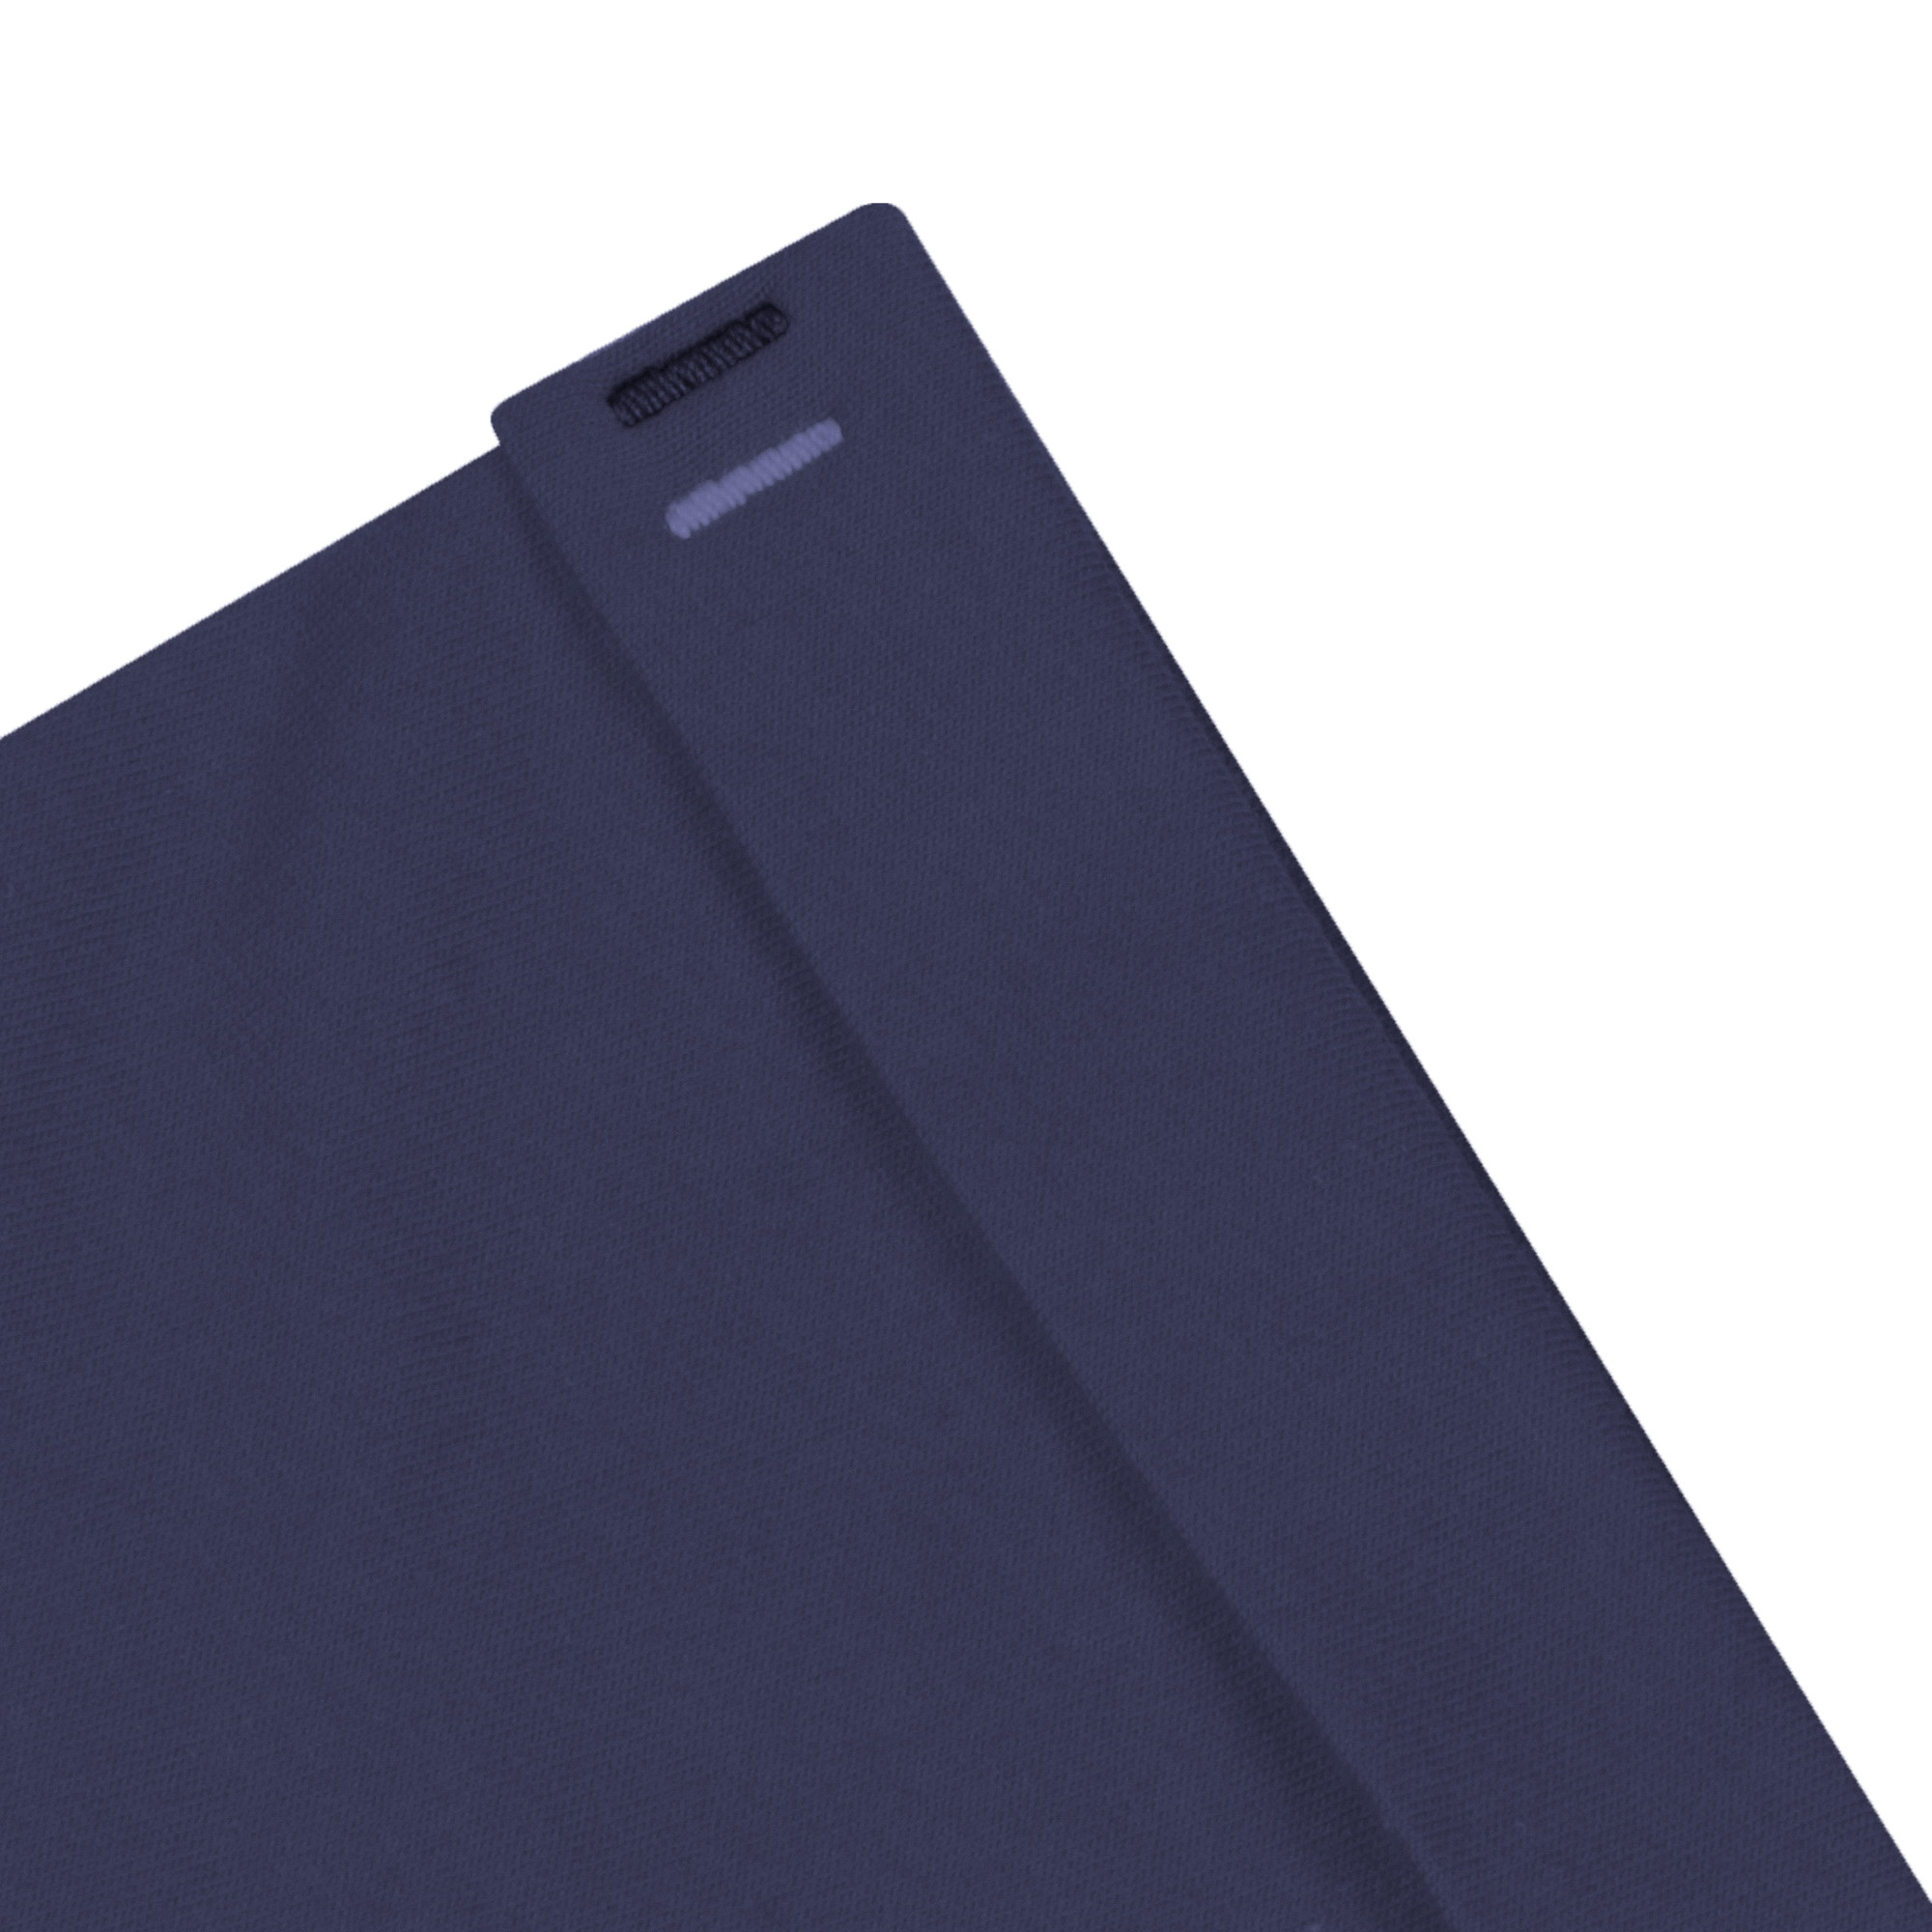 Мужская футболка Pantelemone MF-898 темно-синяя 52, цвет темно-синий, размер 52 - фото 5